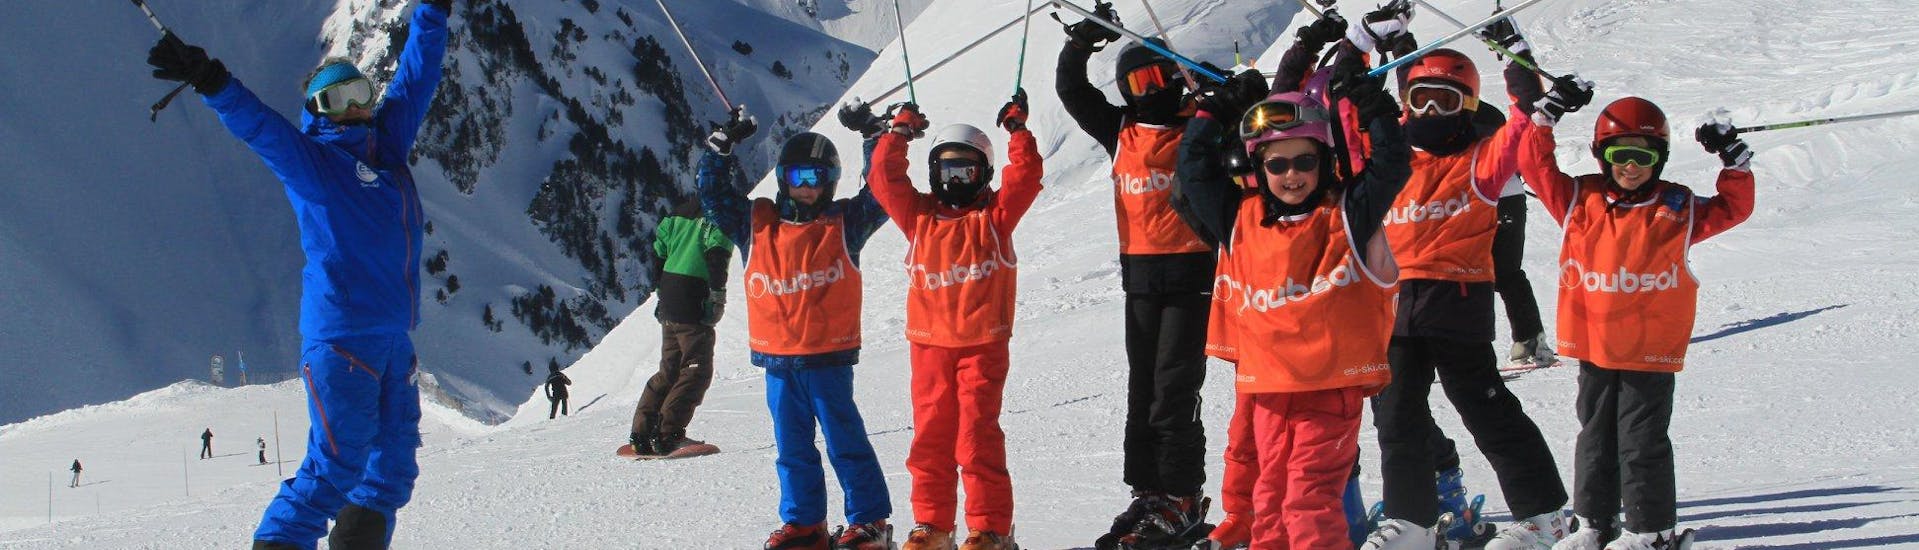 Kinder-Skikurs ab 5 Jahren ohne Erfahrung.